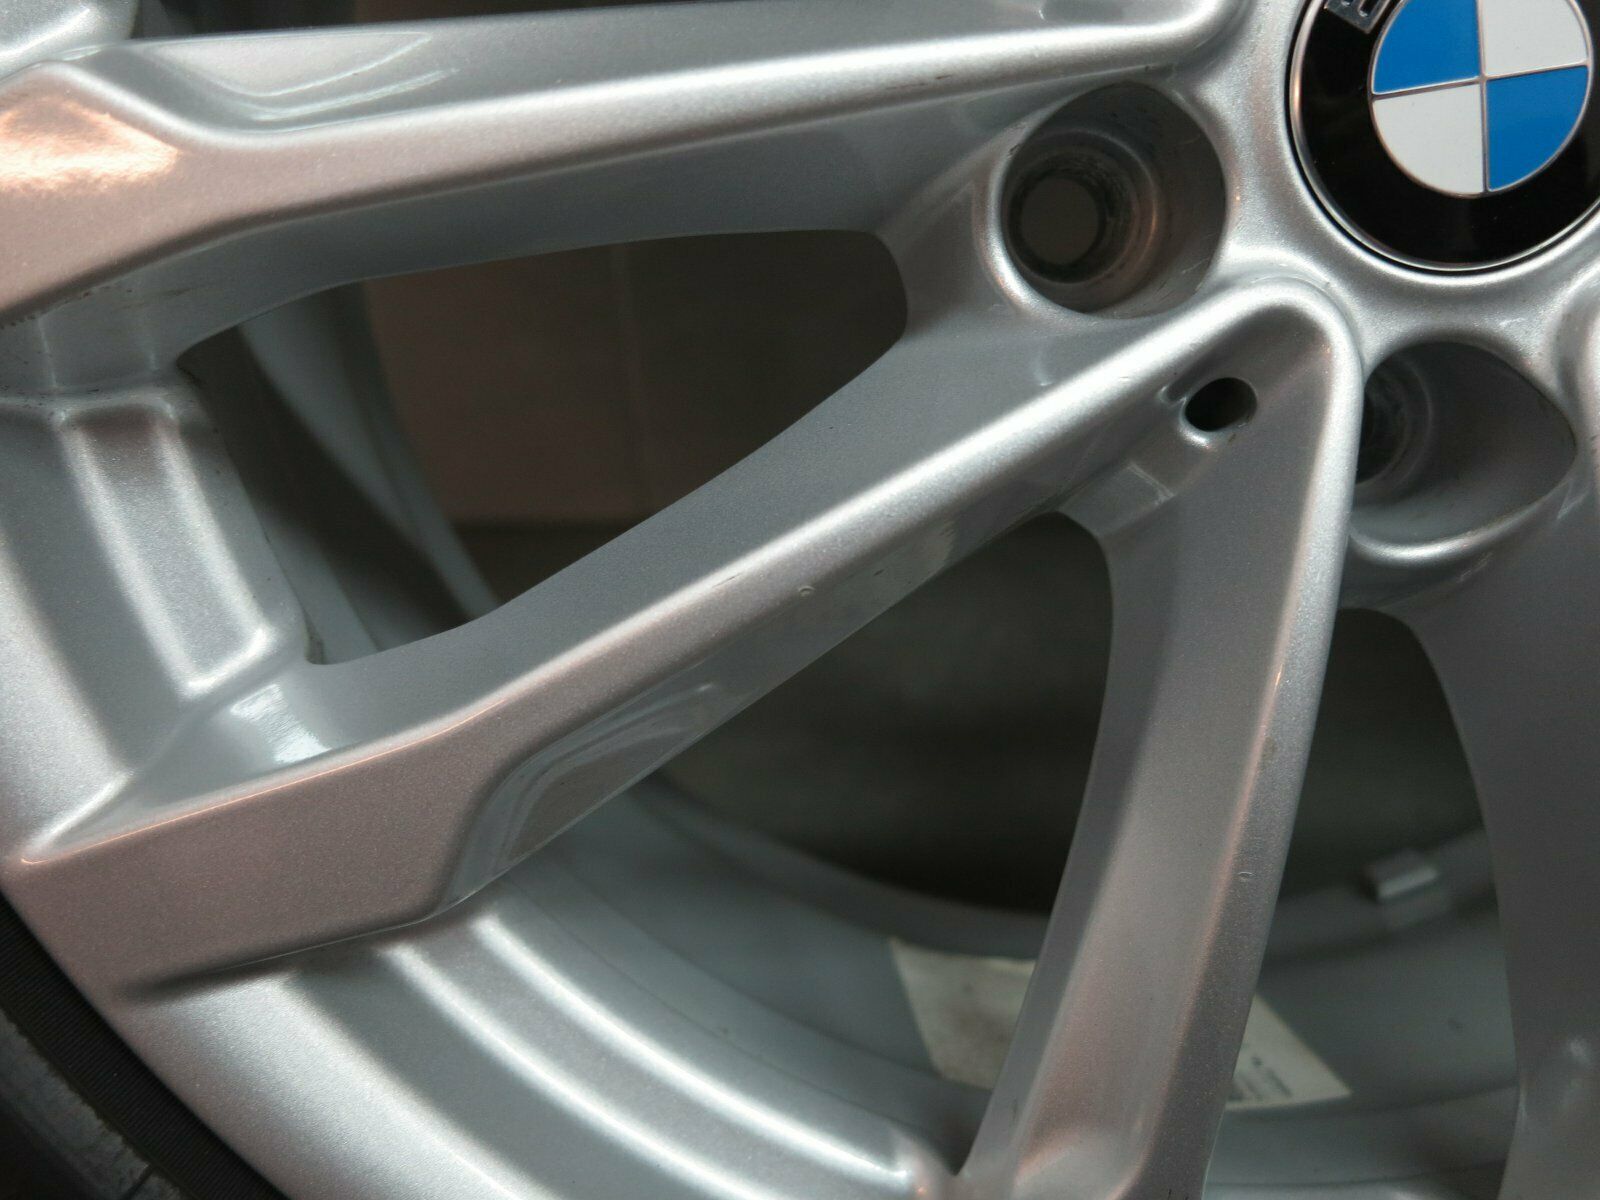 19 pouces roues d'été d'origine BMW X3 G01 X4 G02 Styling 691 6877325 Pneus d'été